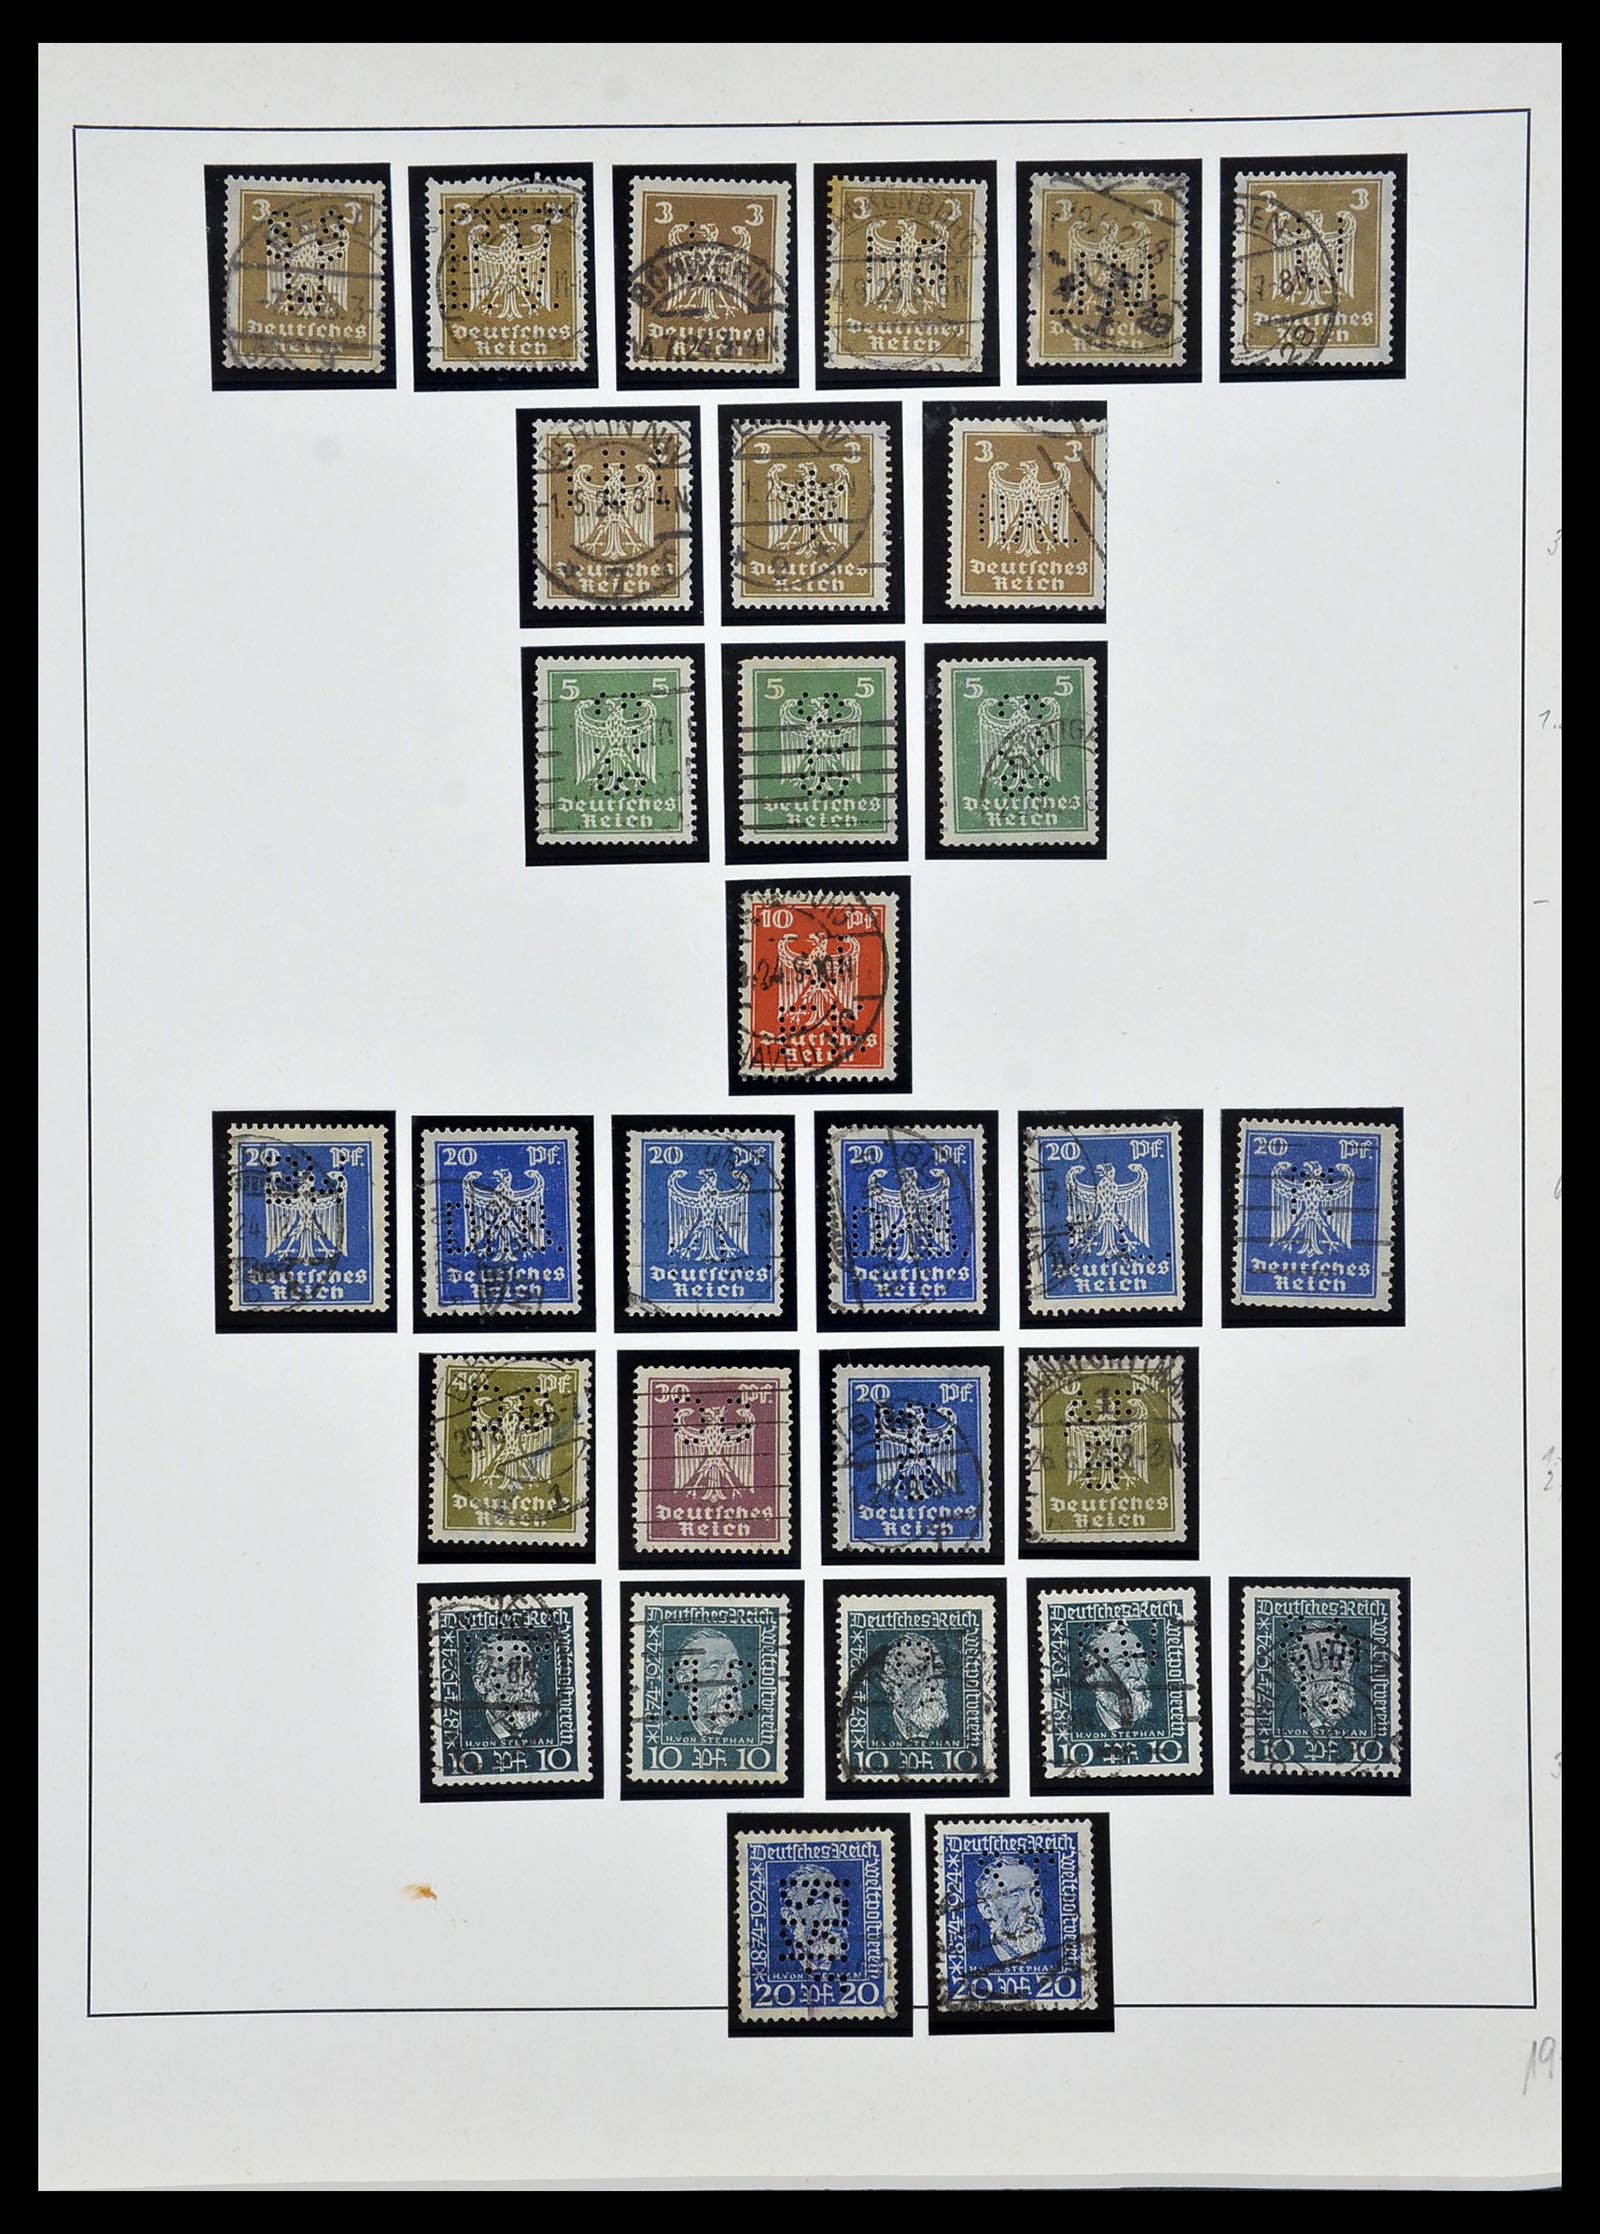 34409 019 - Stamp Collection 34409 German Reich perfins.